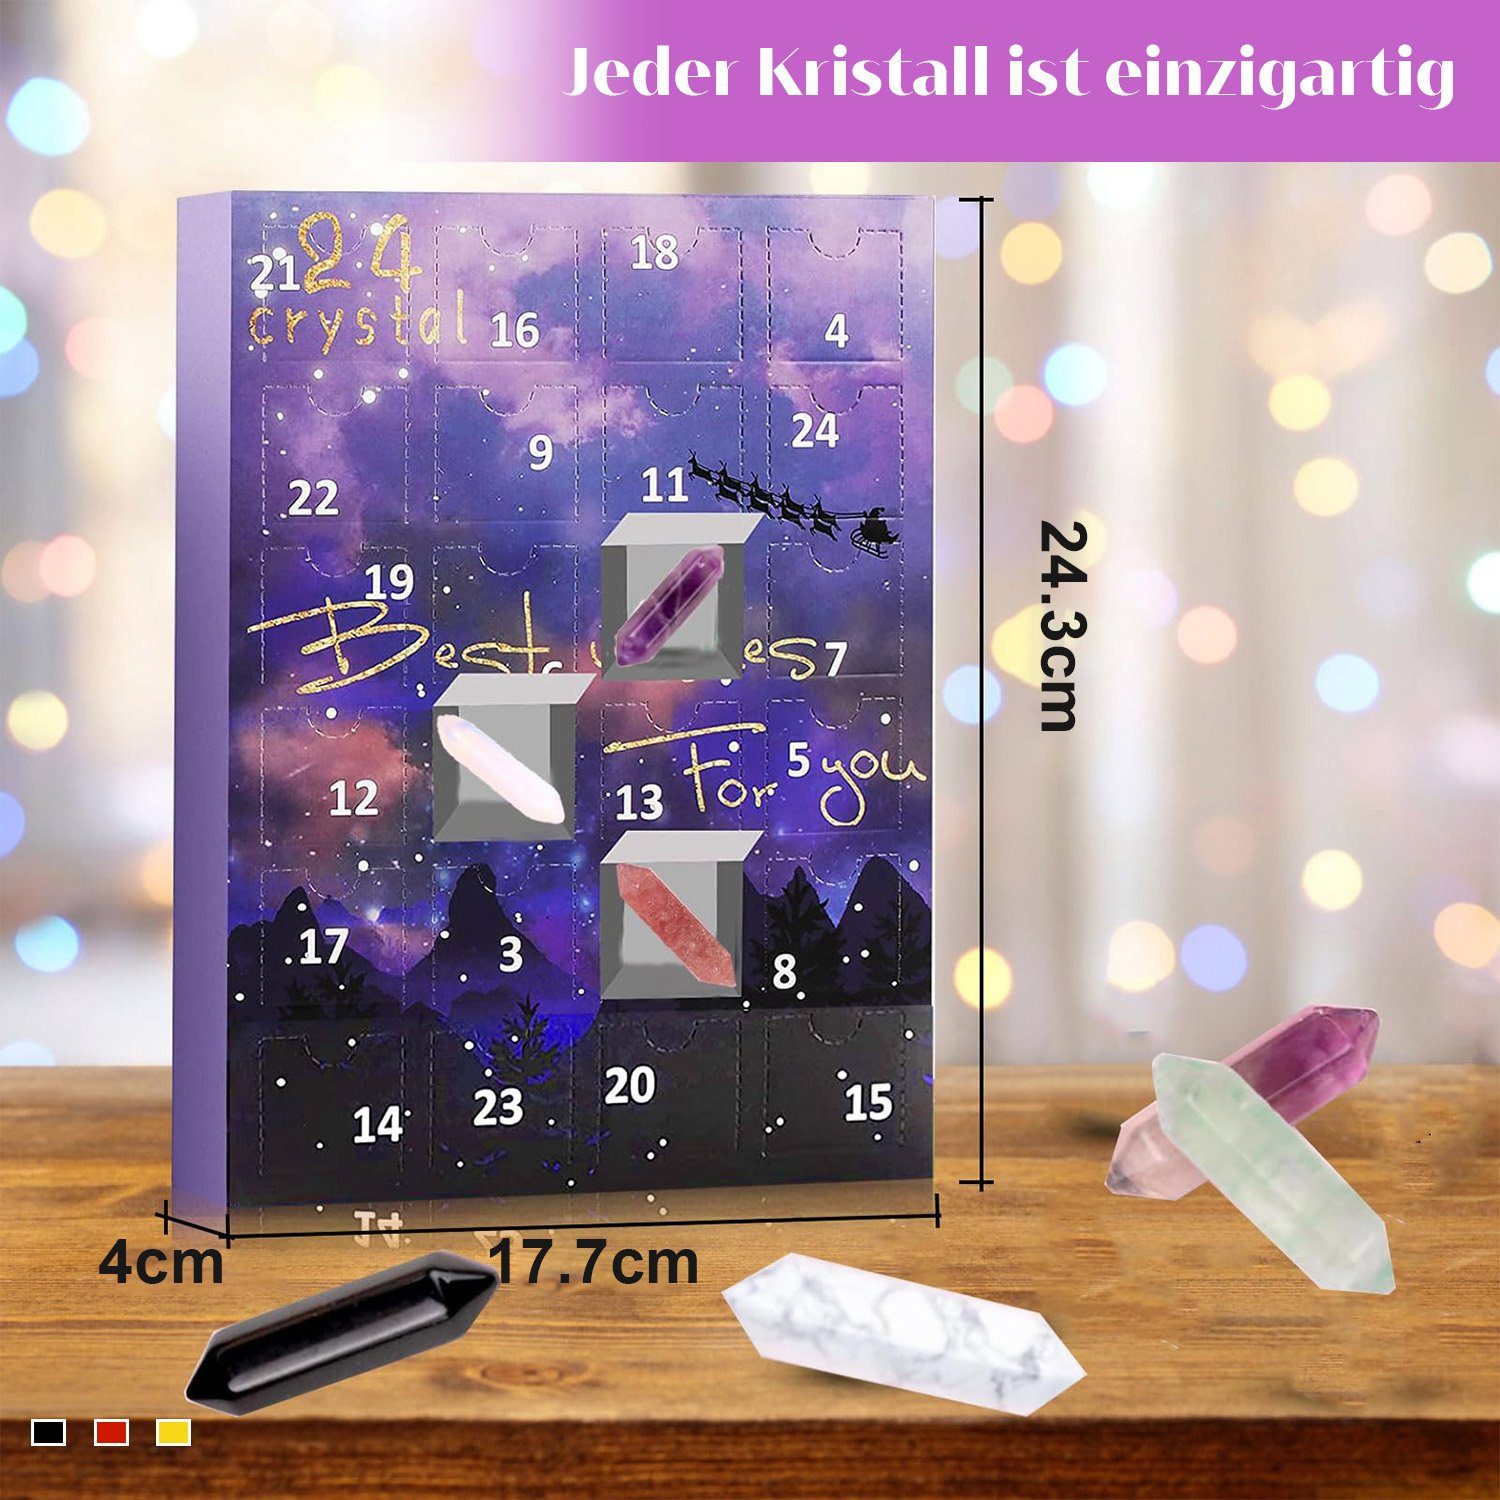 Kristall MAGICSHE Kristall Heilstein Set, mit Adventskalender 24-Tage Halter, Halskette und Armband